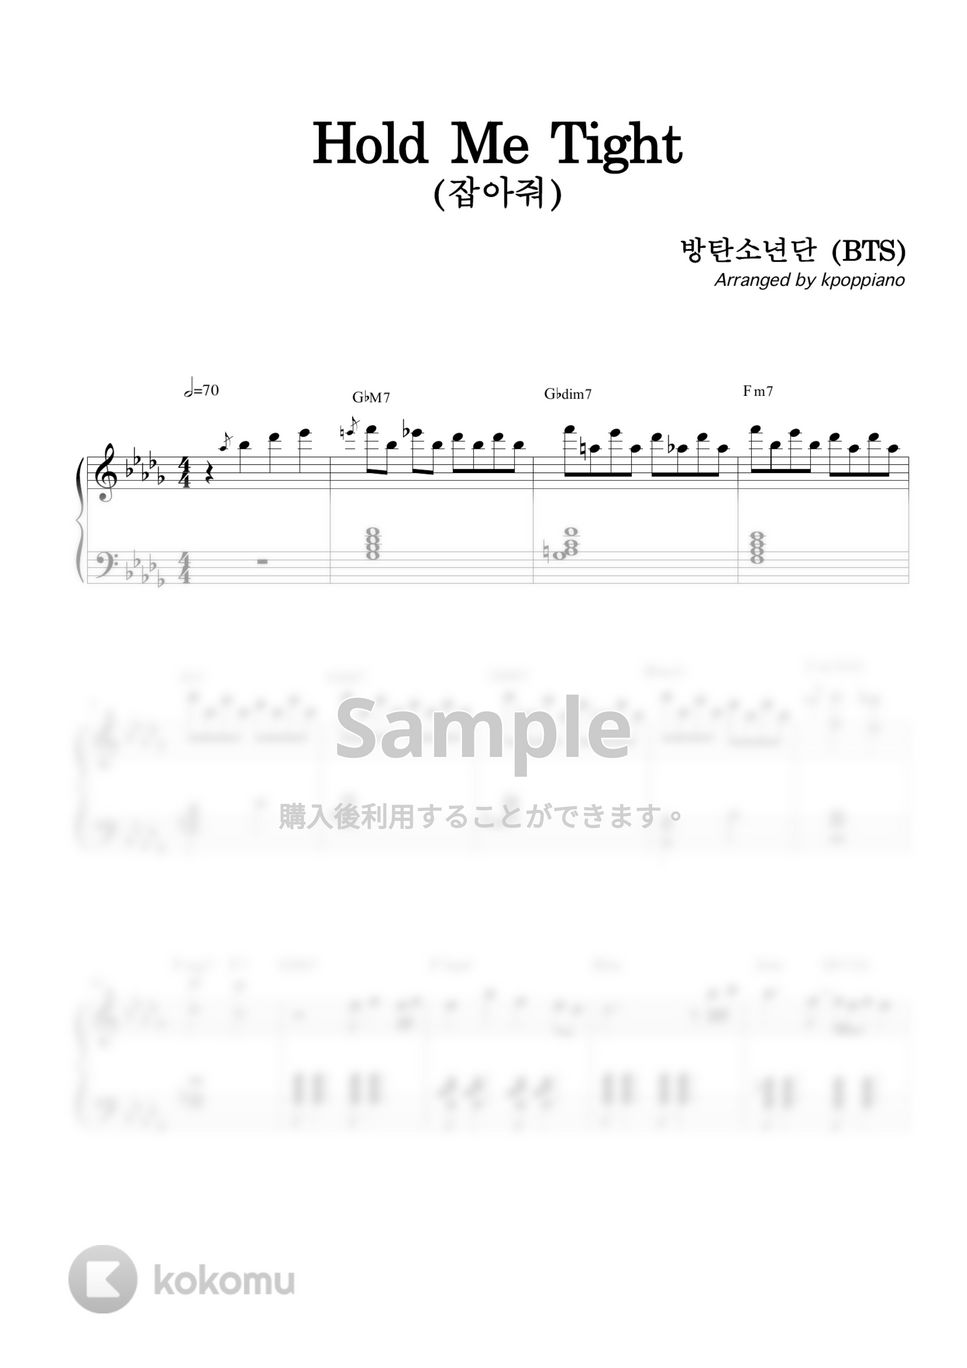 防弾少年団 (BTS) - Hold Me Tight(잡아줘) by KPOP PIANO